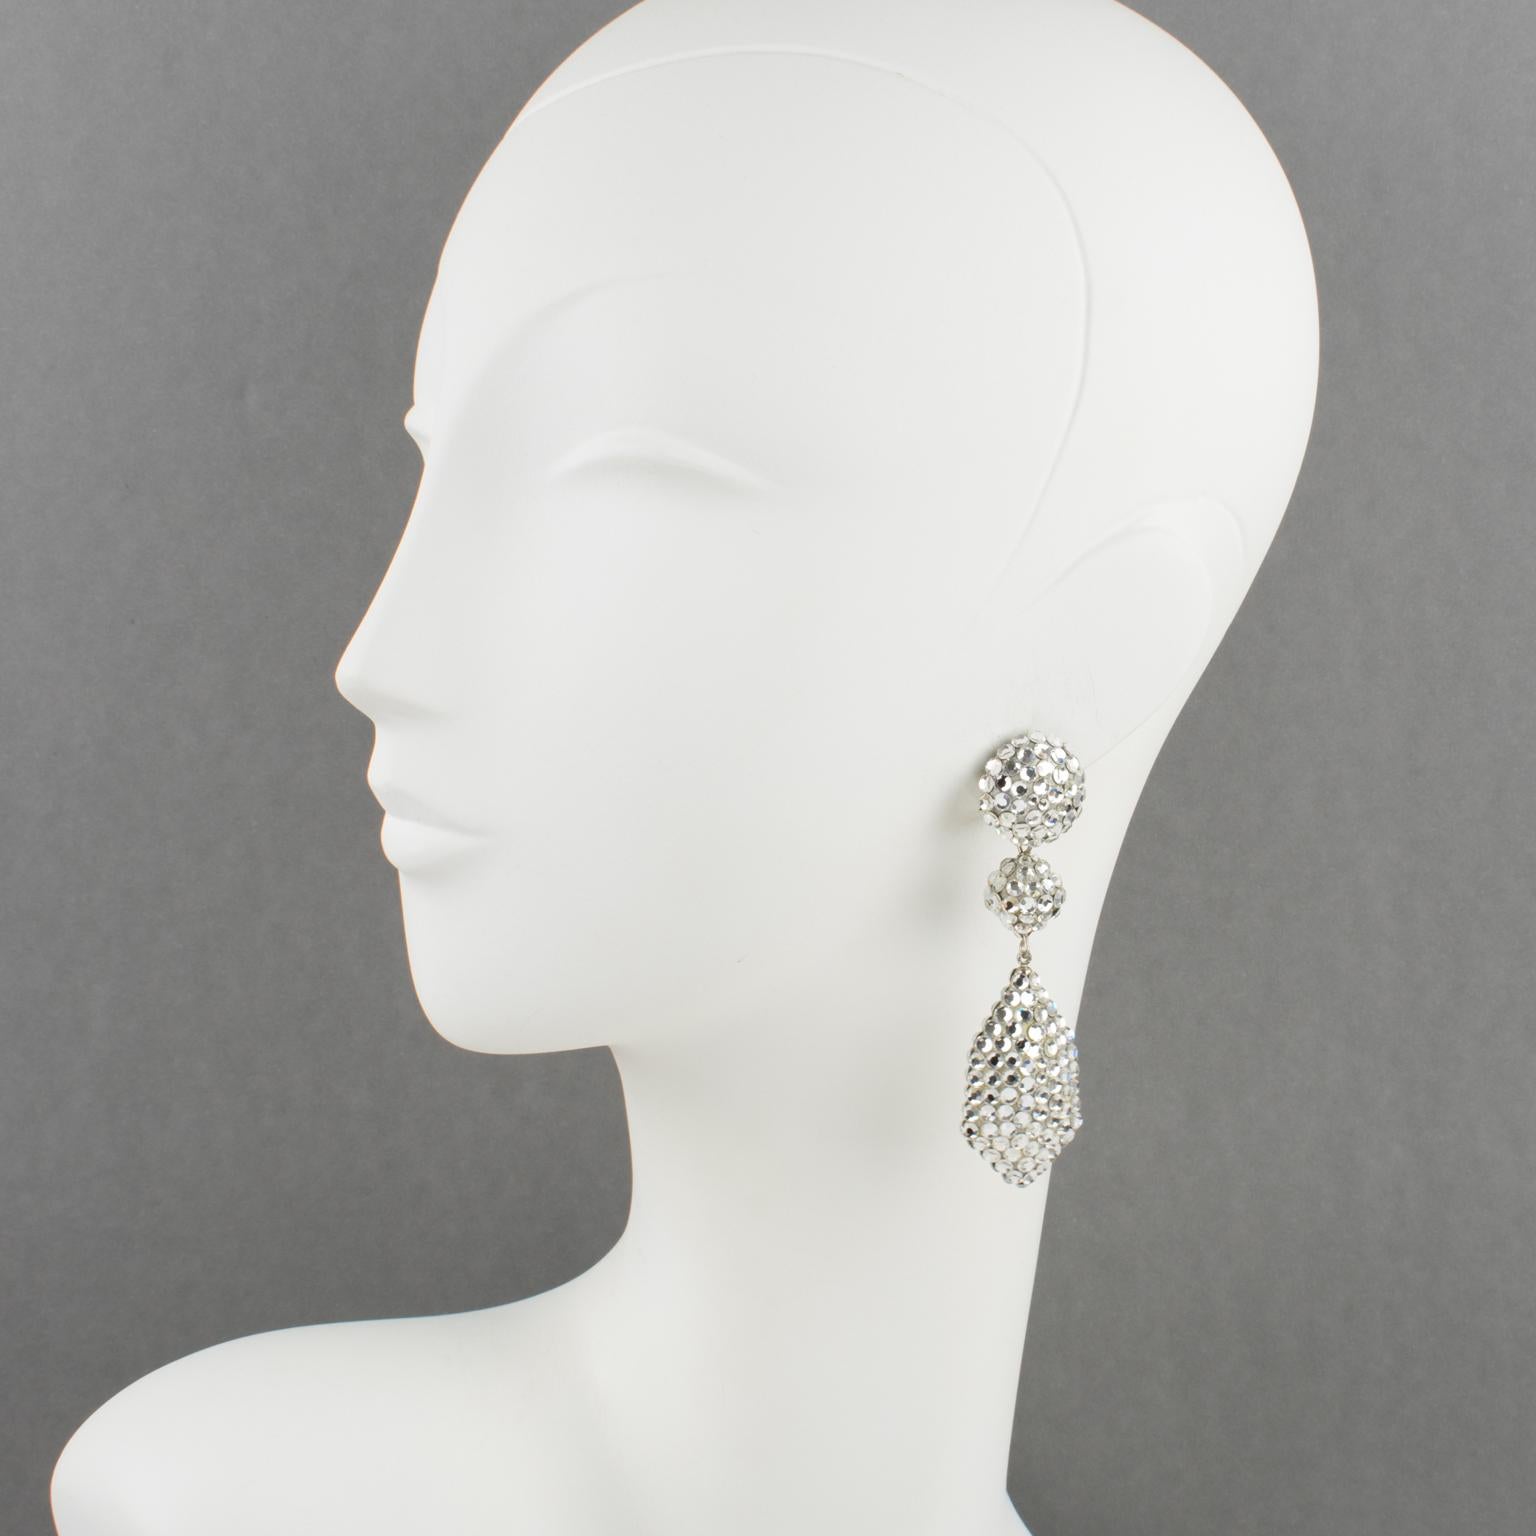 Richard Kerr entwarf in den 1980er Jahren diese wunderschönen Ohrringe mit Clipverschluss. Sie bestehen aus seinen emblematischen Strasspavés und weisen baumelnde geometrische Formen auf, die mit Strass in Silberkristallen auf einer cremefarbenen